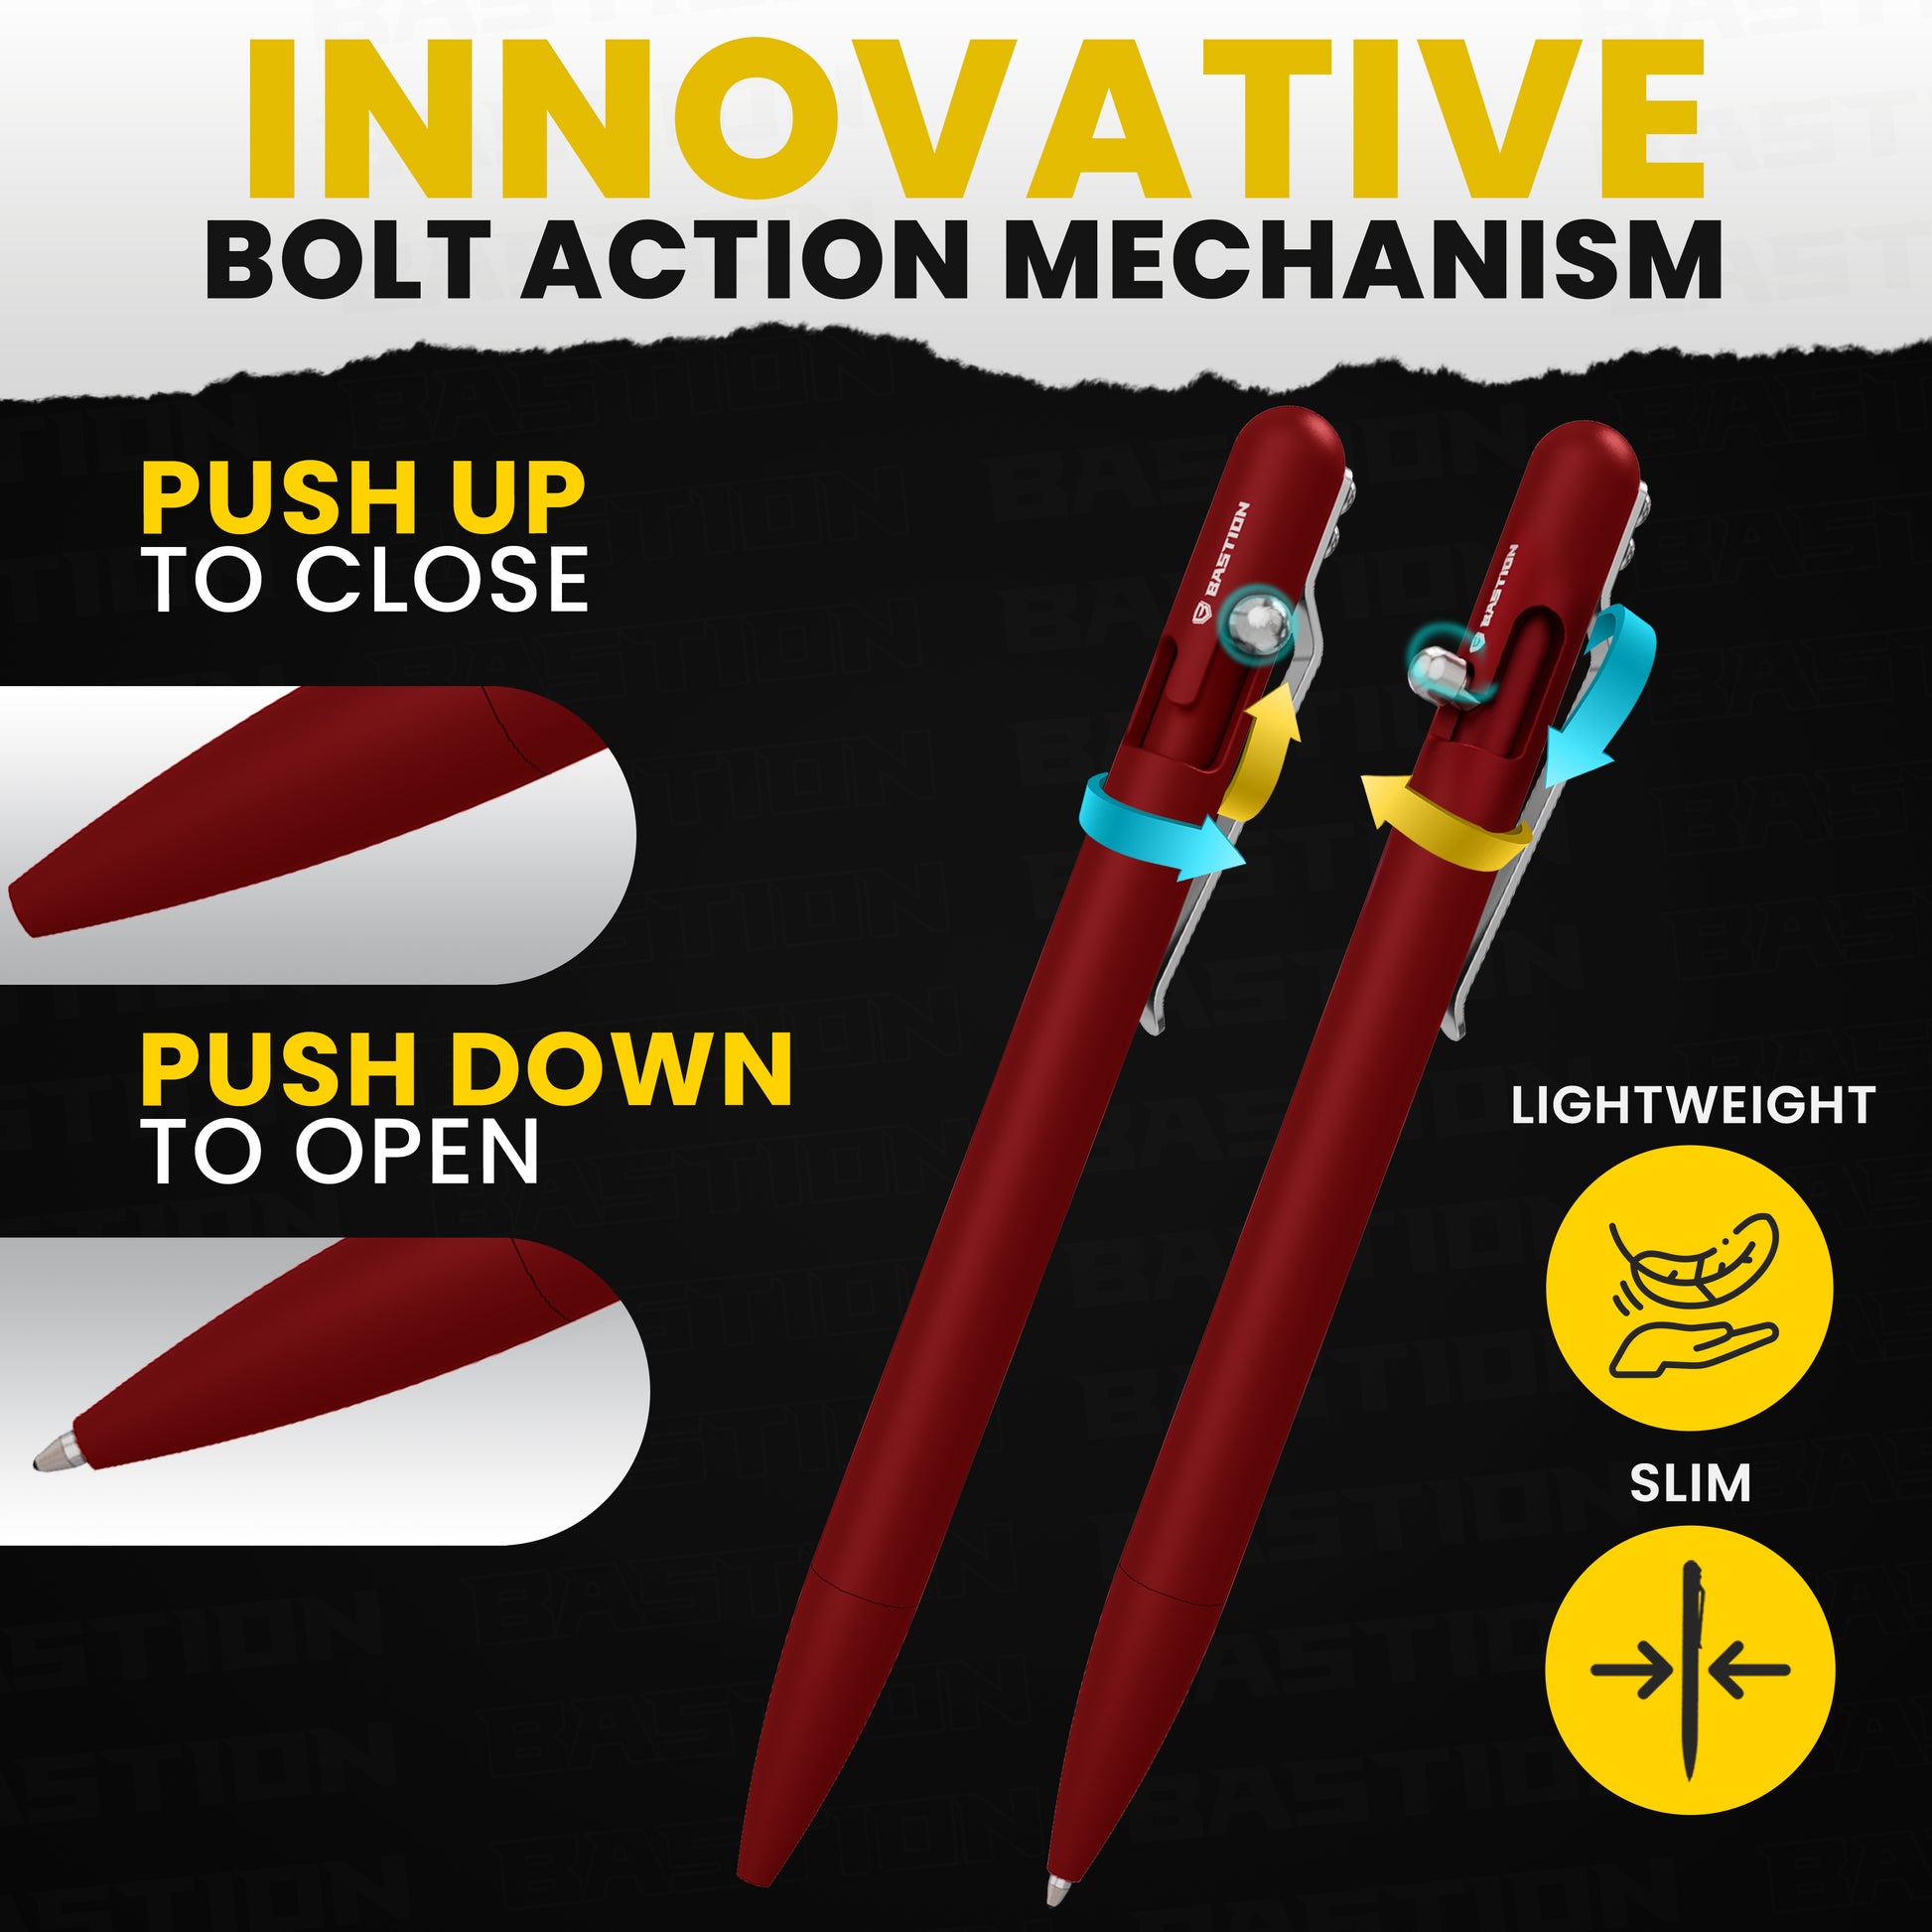 Aluminum - Slim Bolt Action Pen by Bastion® - Bastion Bolt Action Pen